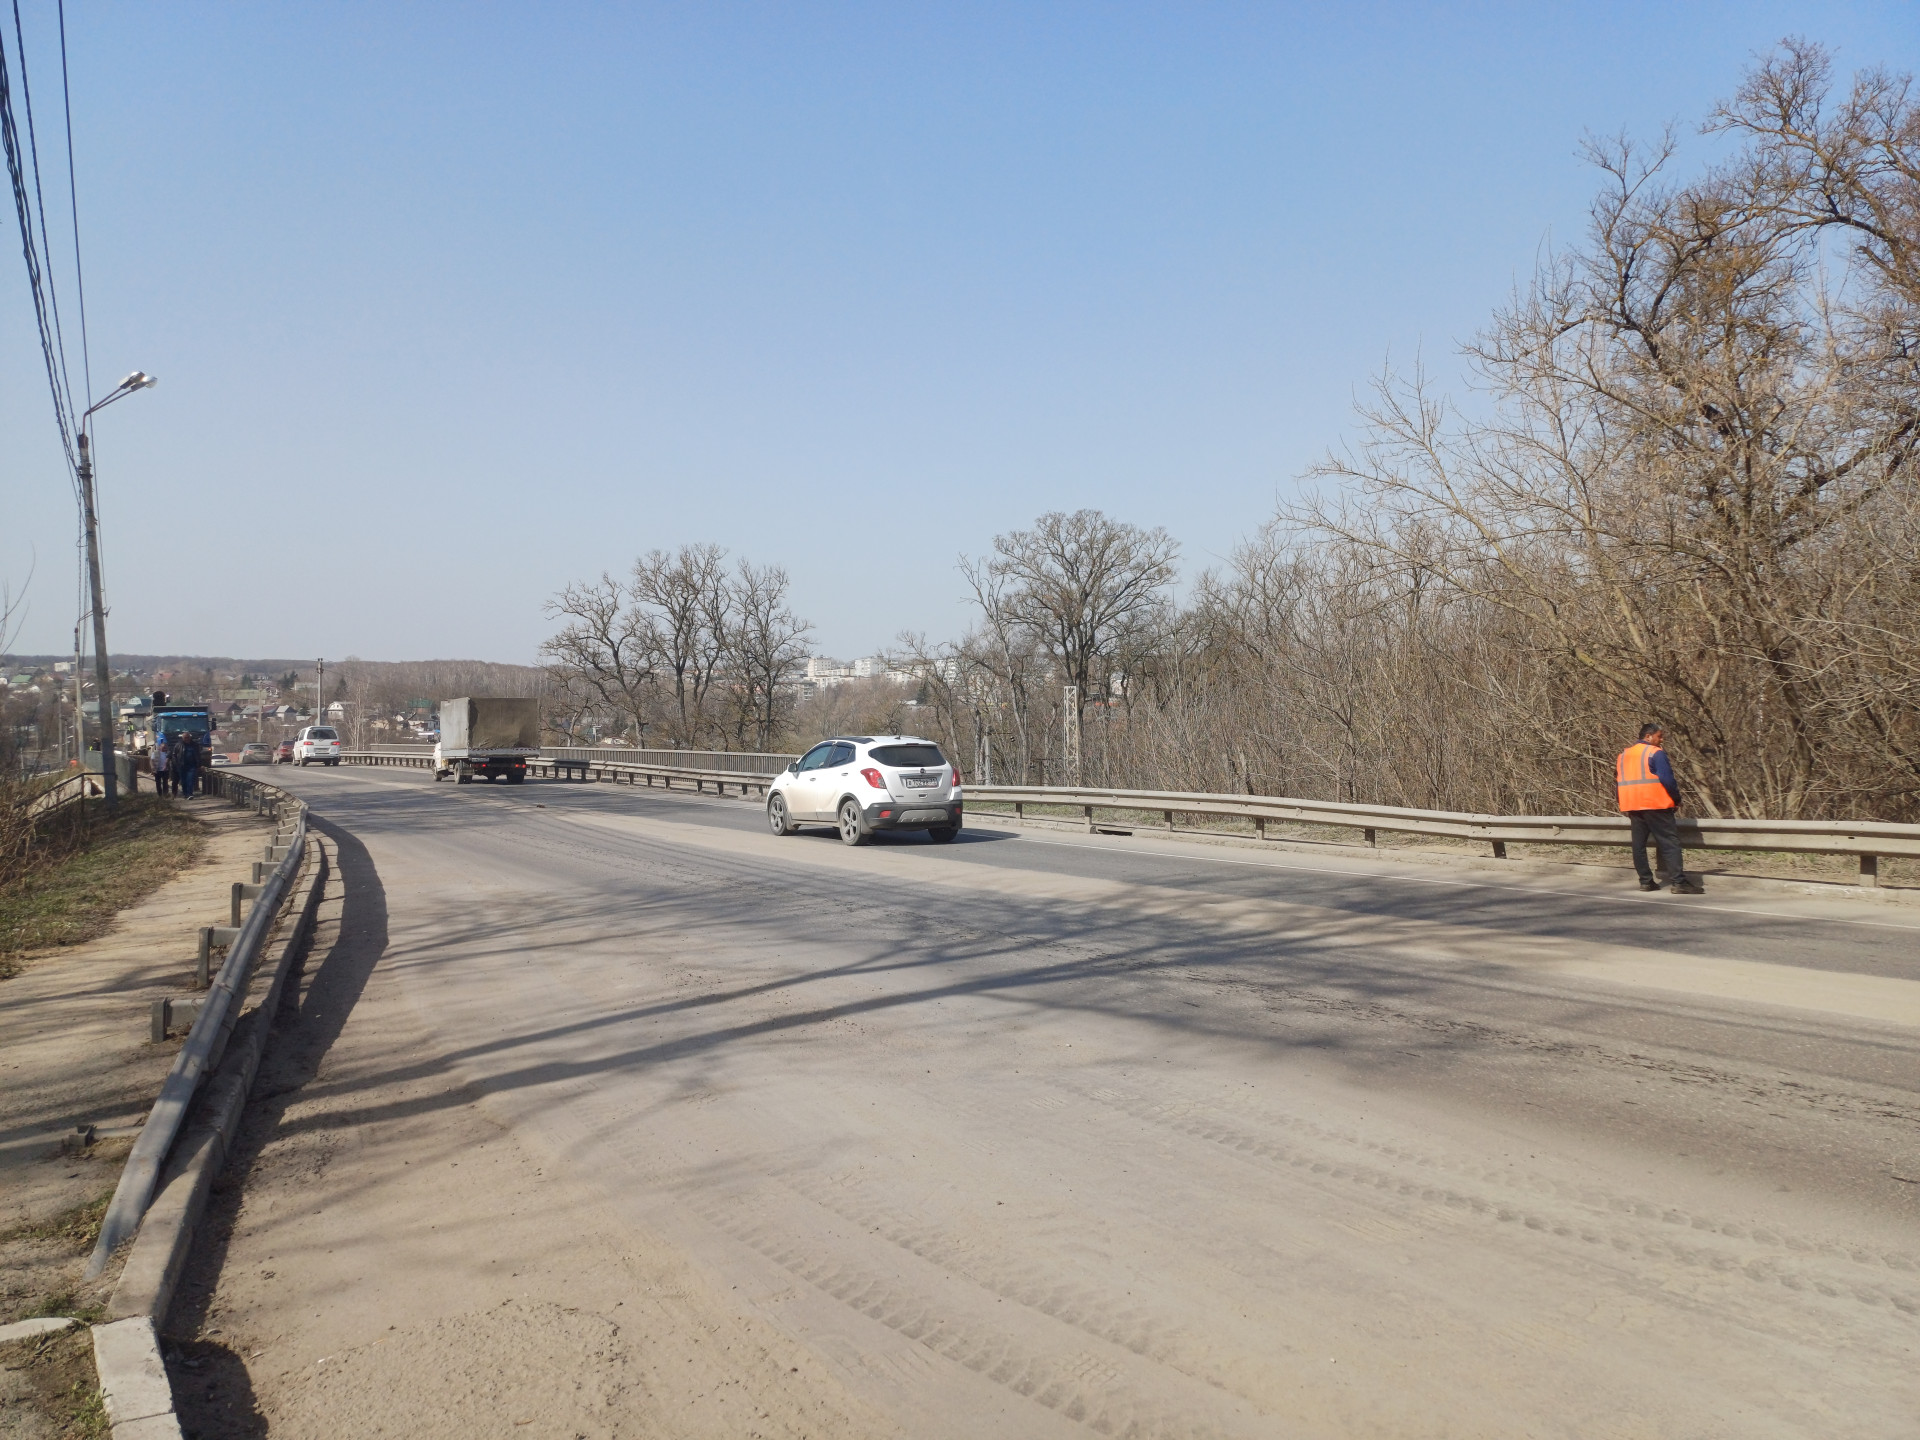 Глава администрации Тулы Илья Беспалов поручил выполнить работы на Щекинском шоссе качественно и в срок